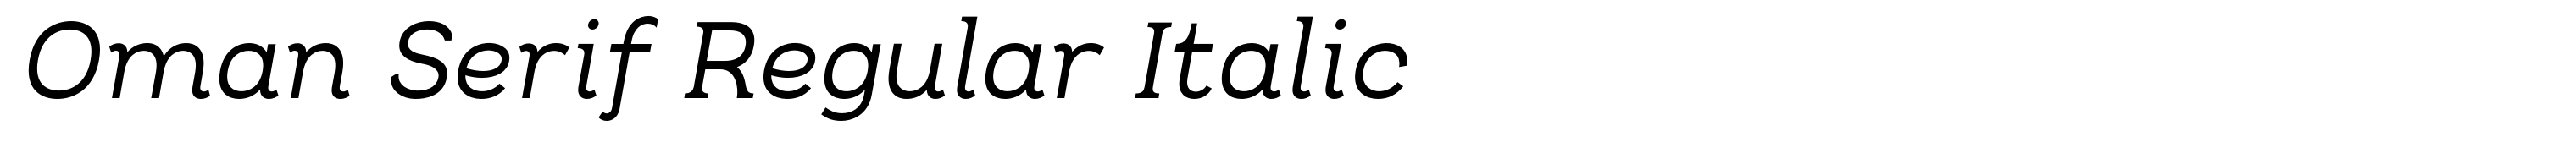 Oman Serif Regular Italic